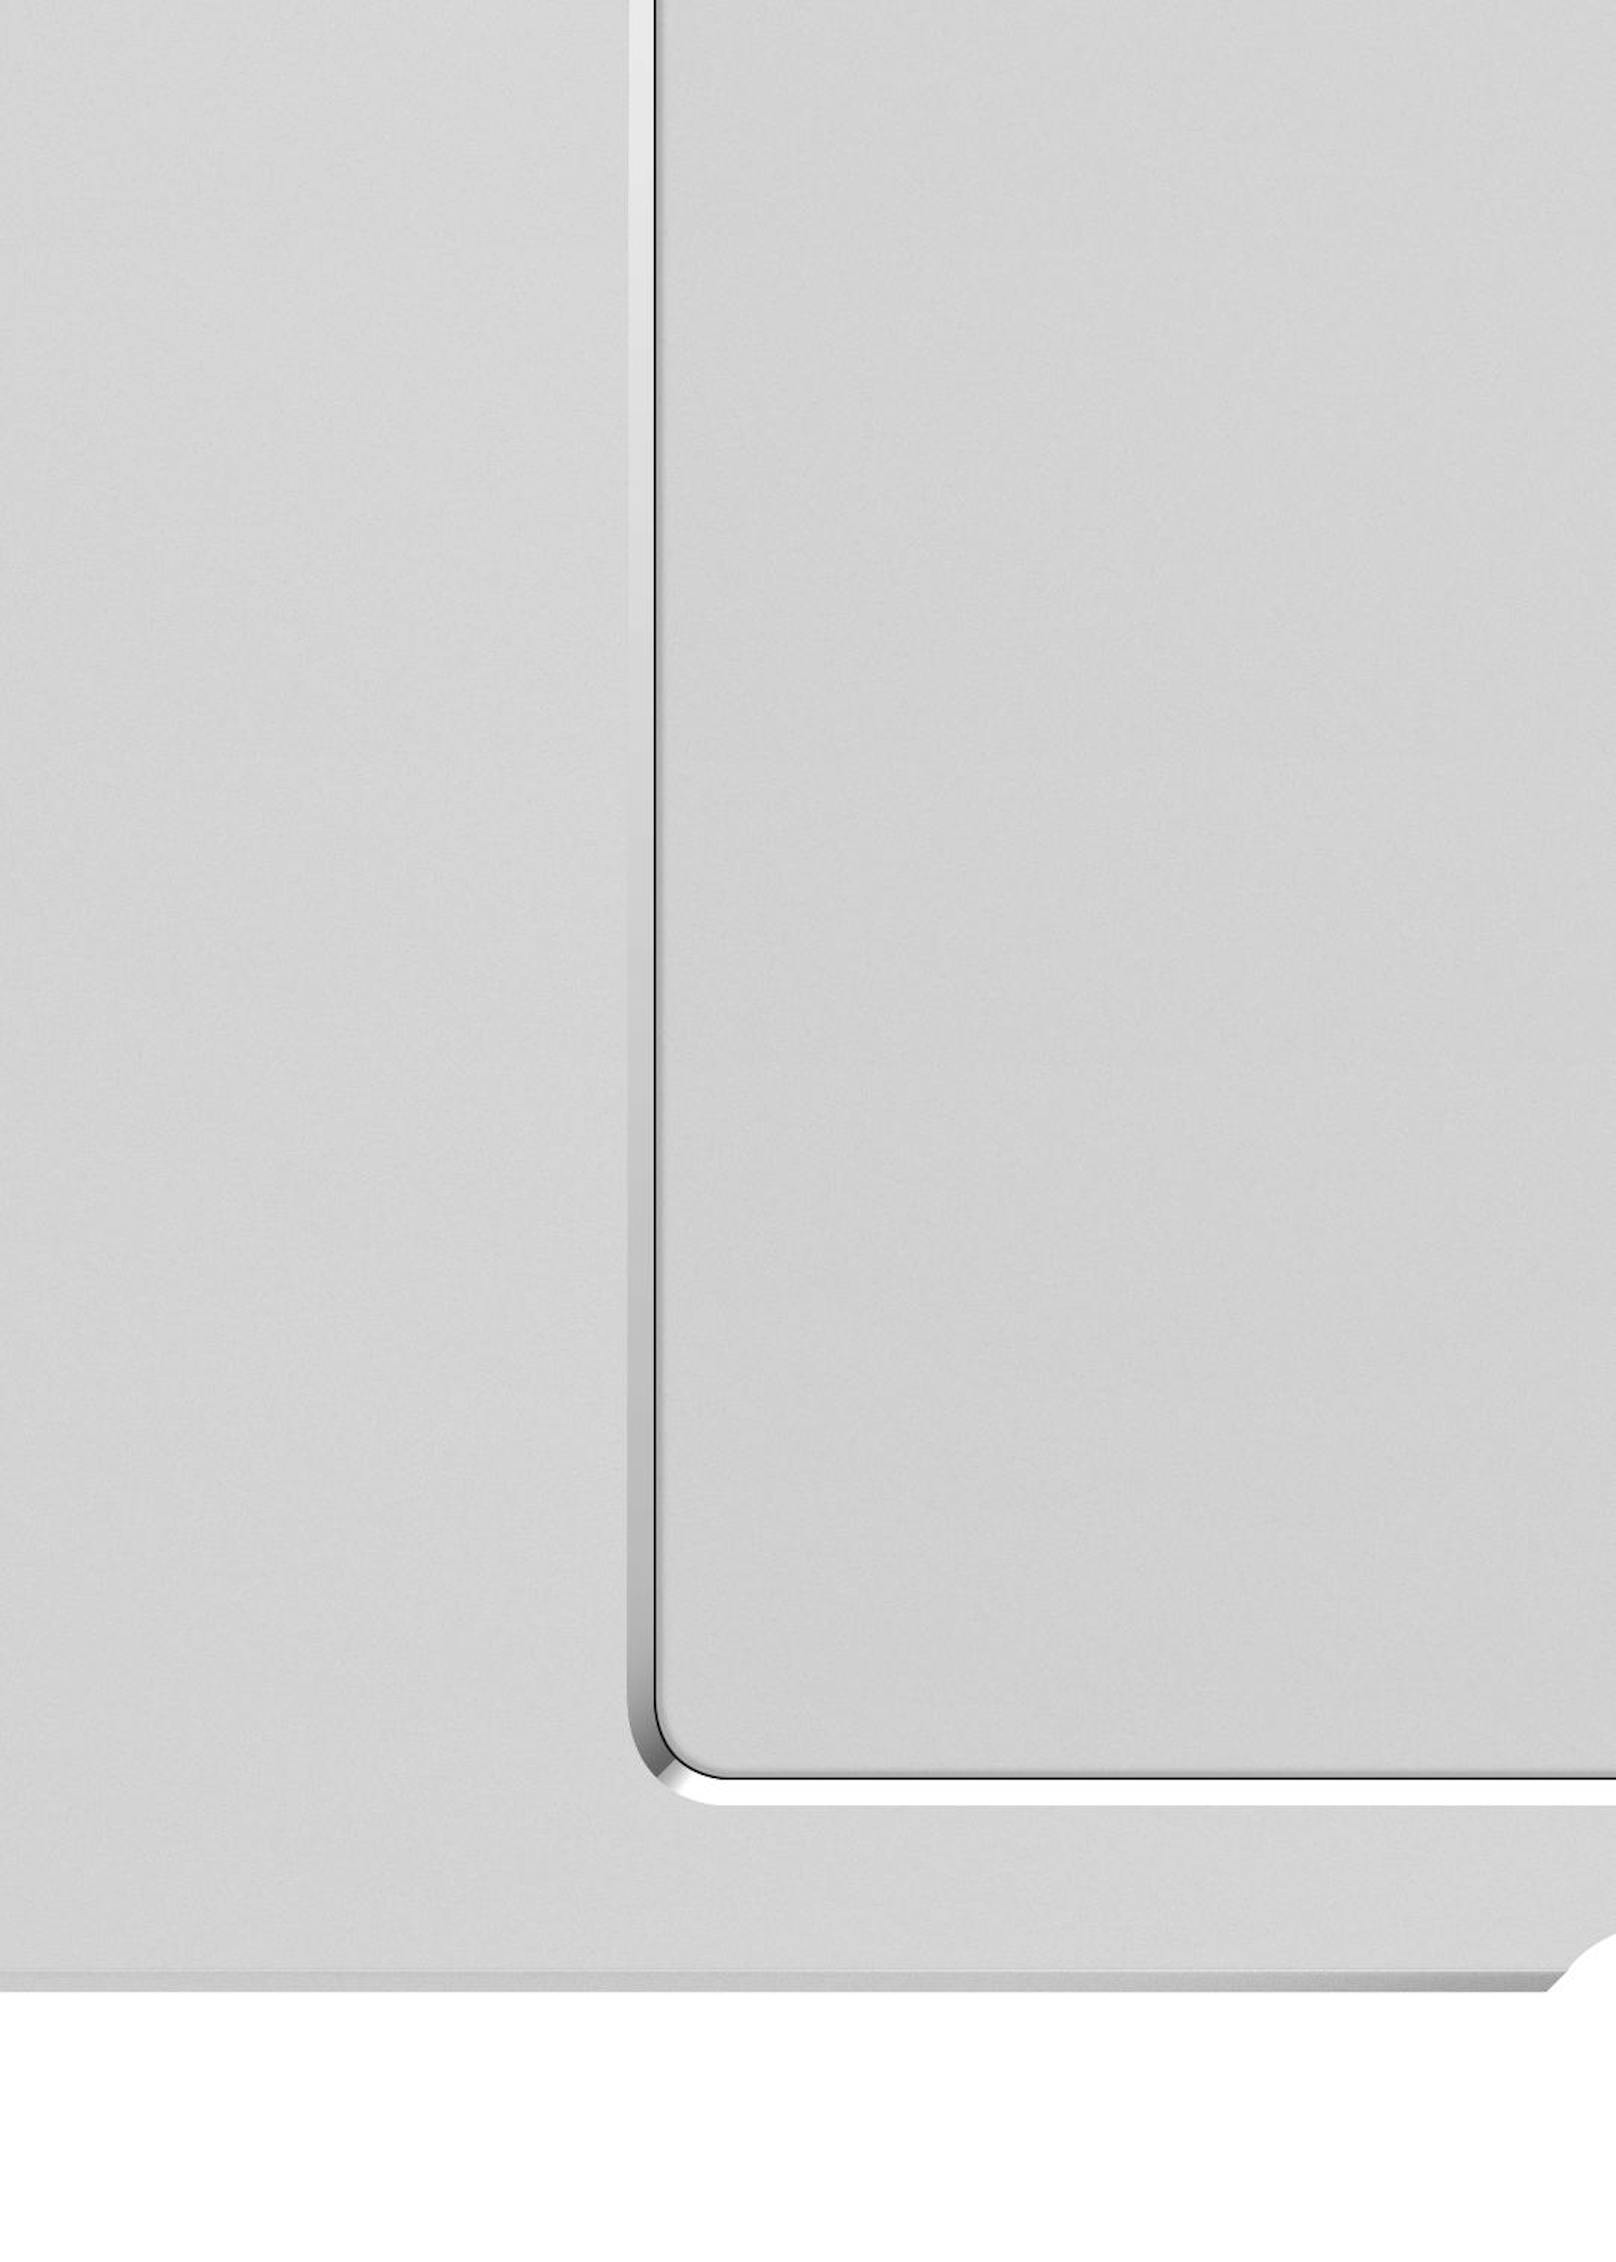 Wieder orientiert sich das MateBook nicht nur namentlich am MacBook, sondern auch beim Design.